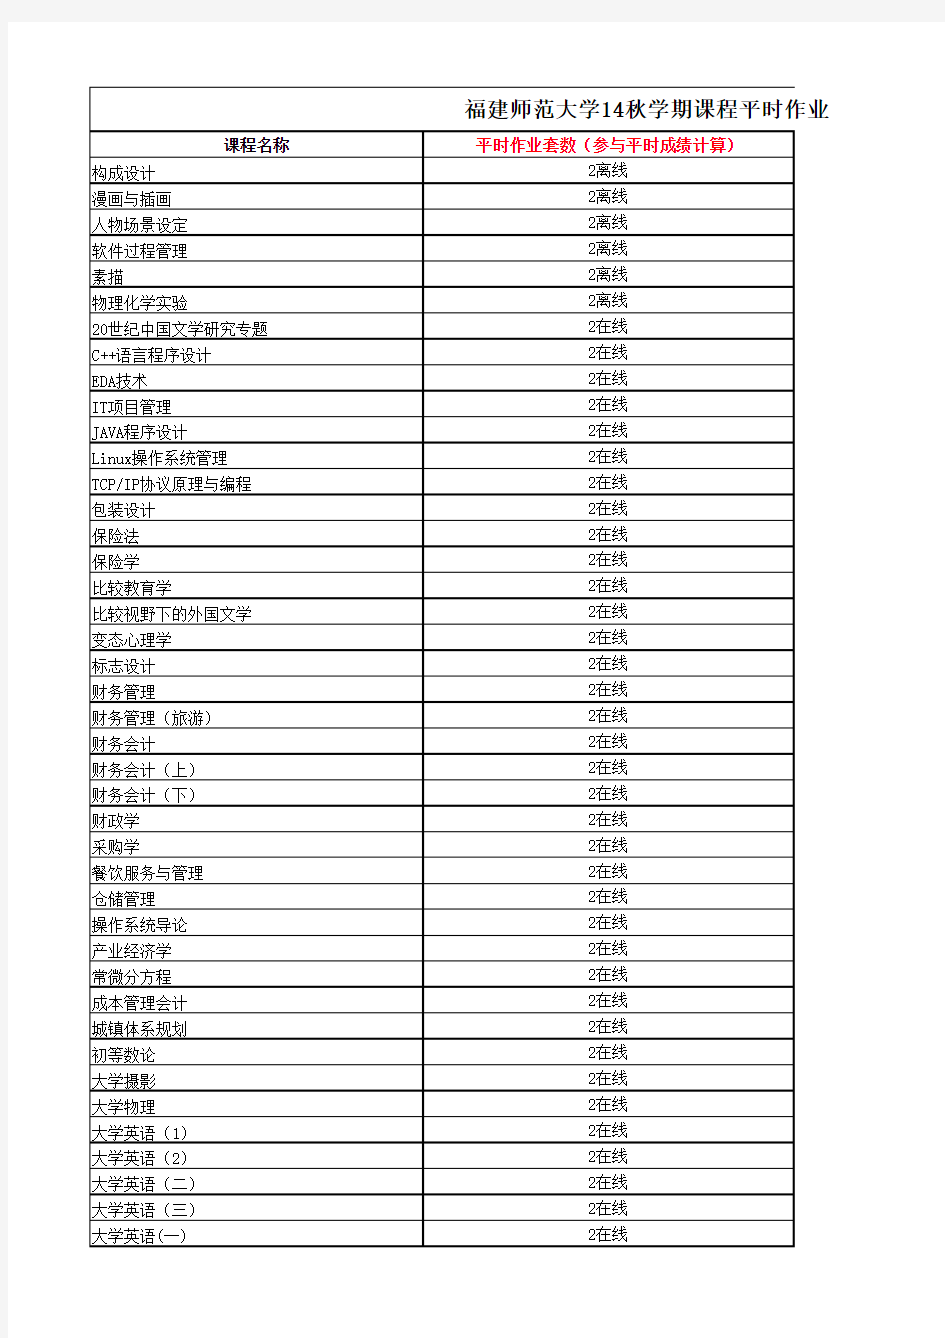 福建师范大学2014年秋学期平时作业一览表